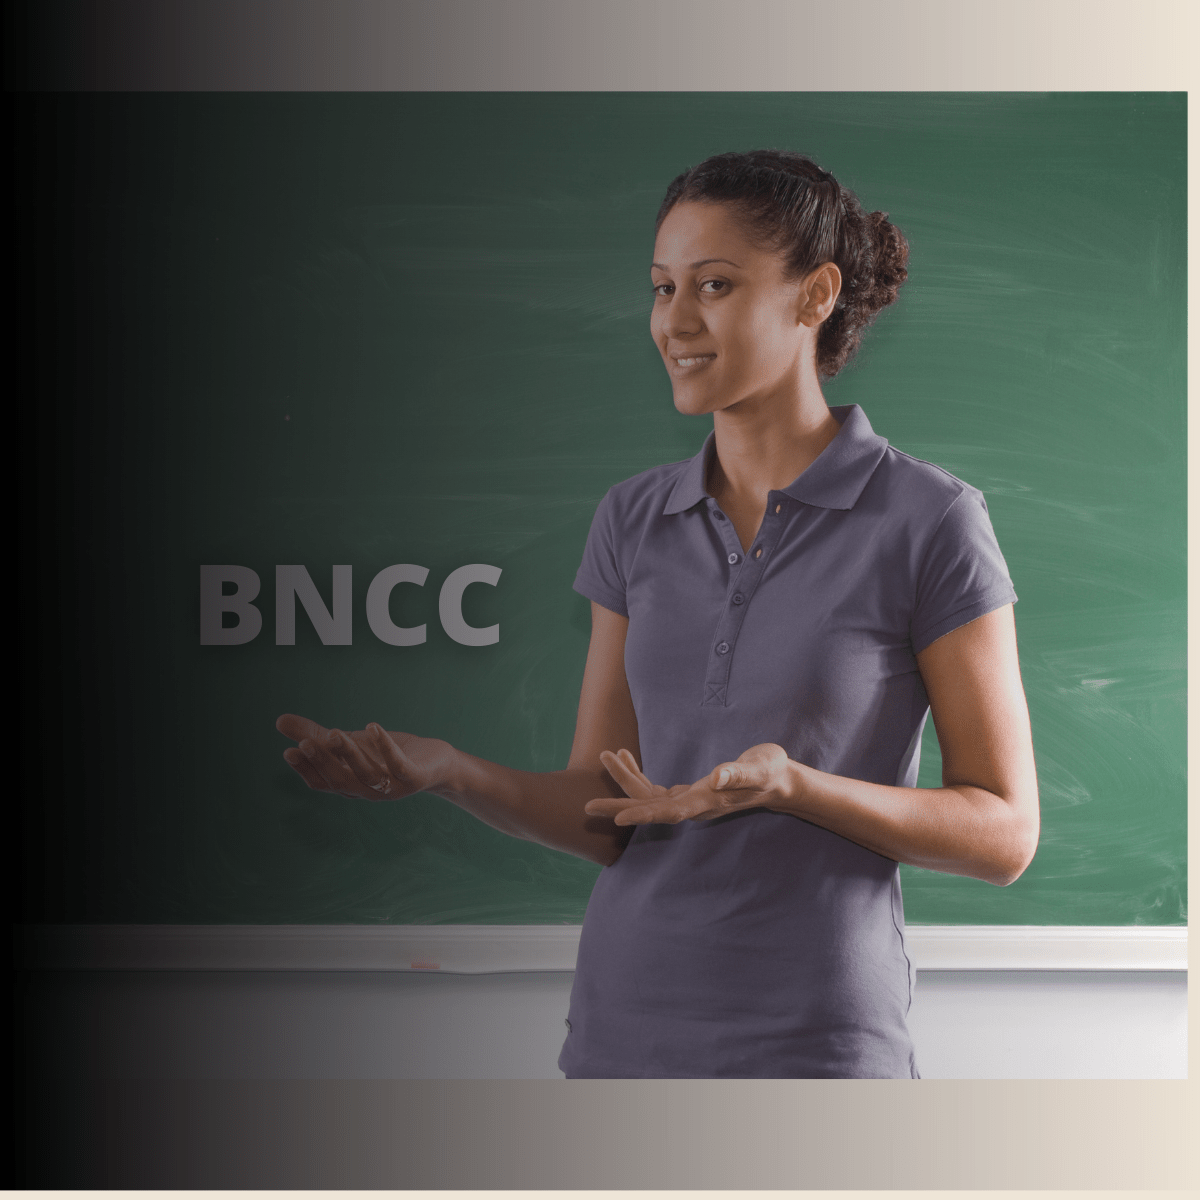 BNCC-Base Nacional Comum Curricular